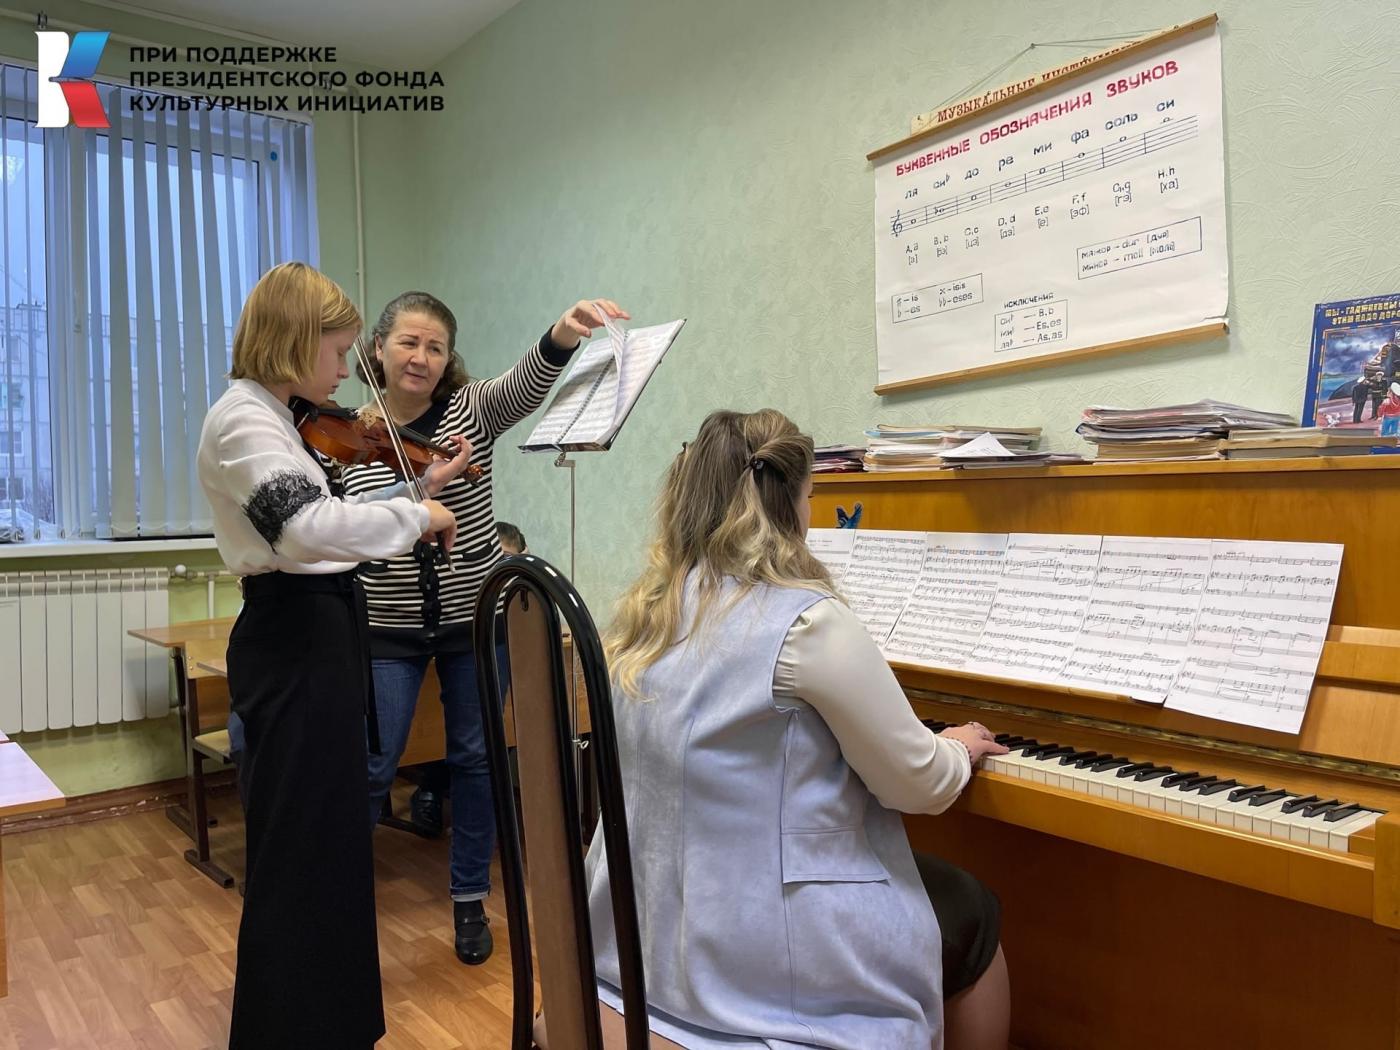 Детская школы искусств из Гаджиево получила поддержку Президентского фонда культурных инициатив